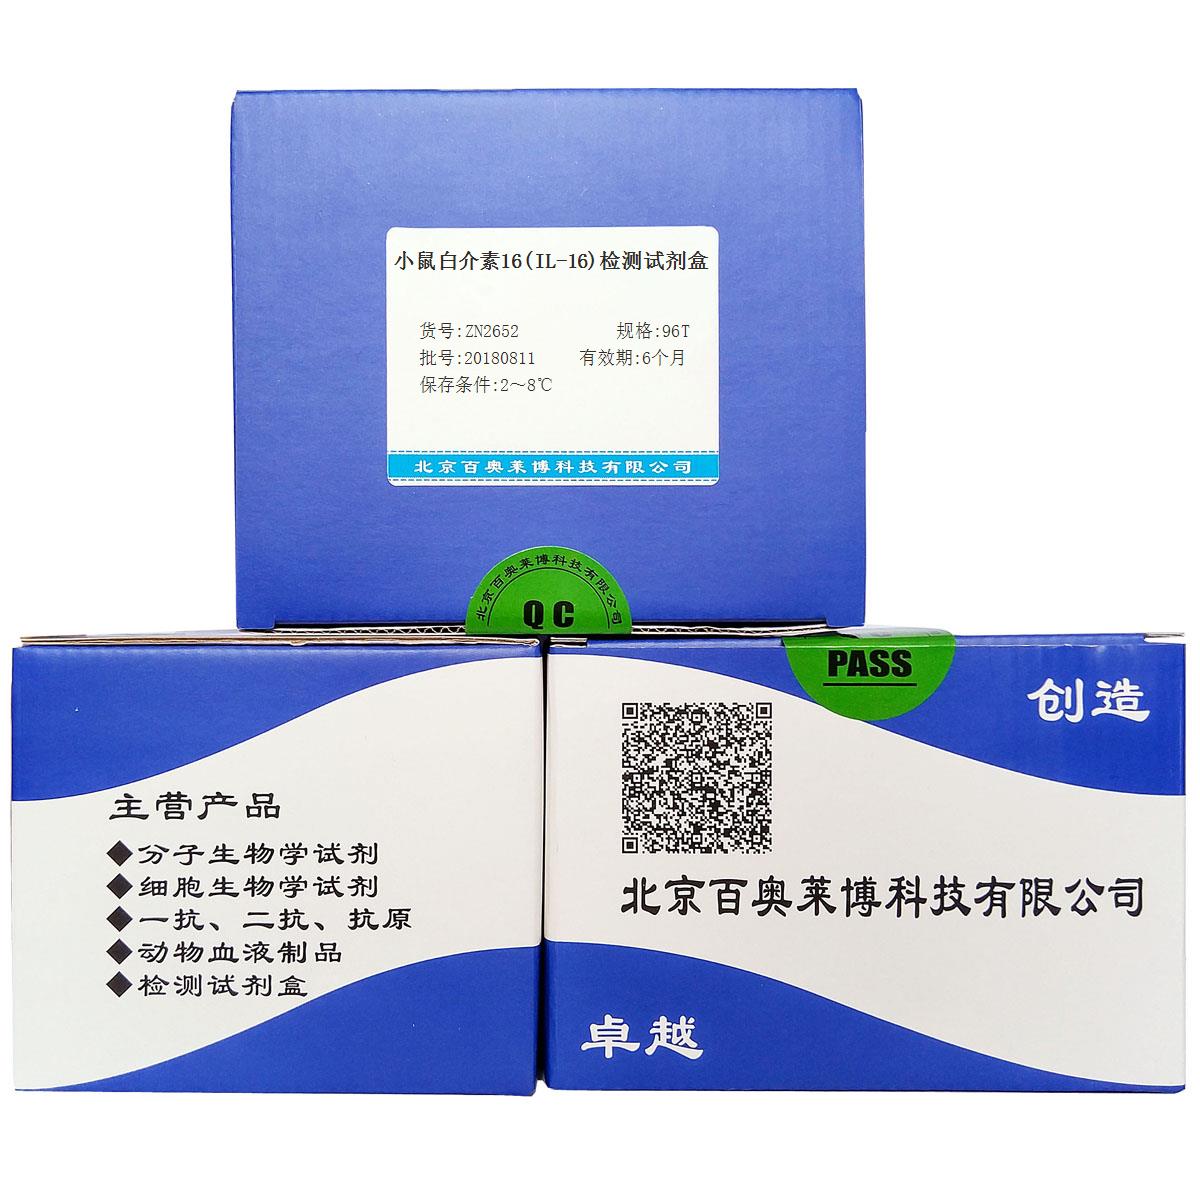 小鼠白介素16(IL-16)检测试剂盒